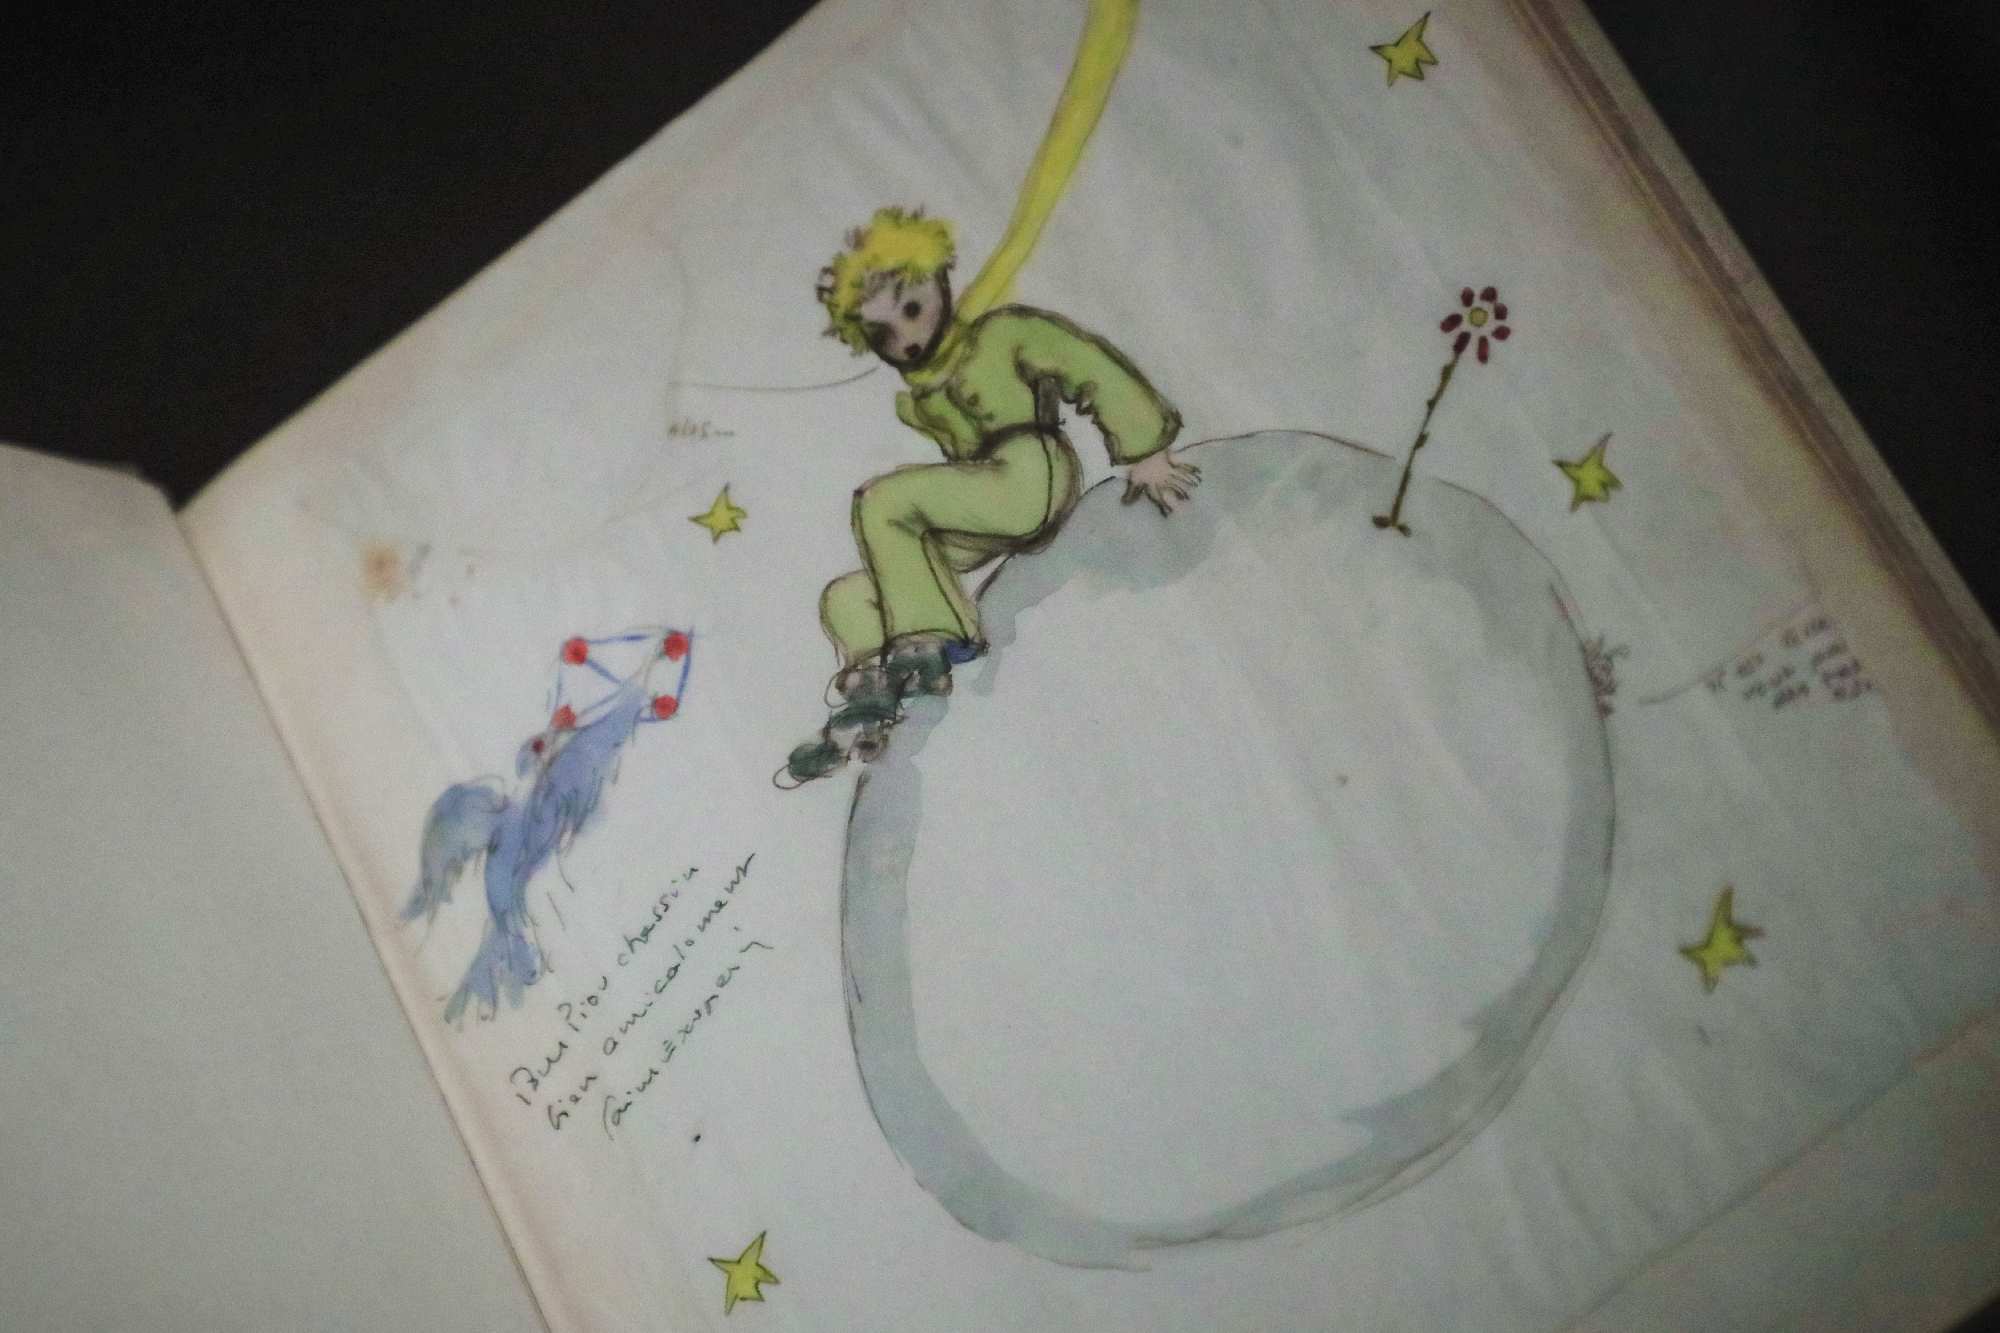 Πρωτότυπο σκίτσο του Αντουάν ντε Σαιντ Εξυπερύ από το βιβλίο «Μικρός Πρίγκιπας»